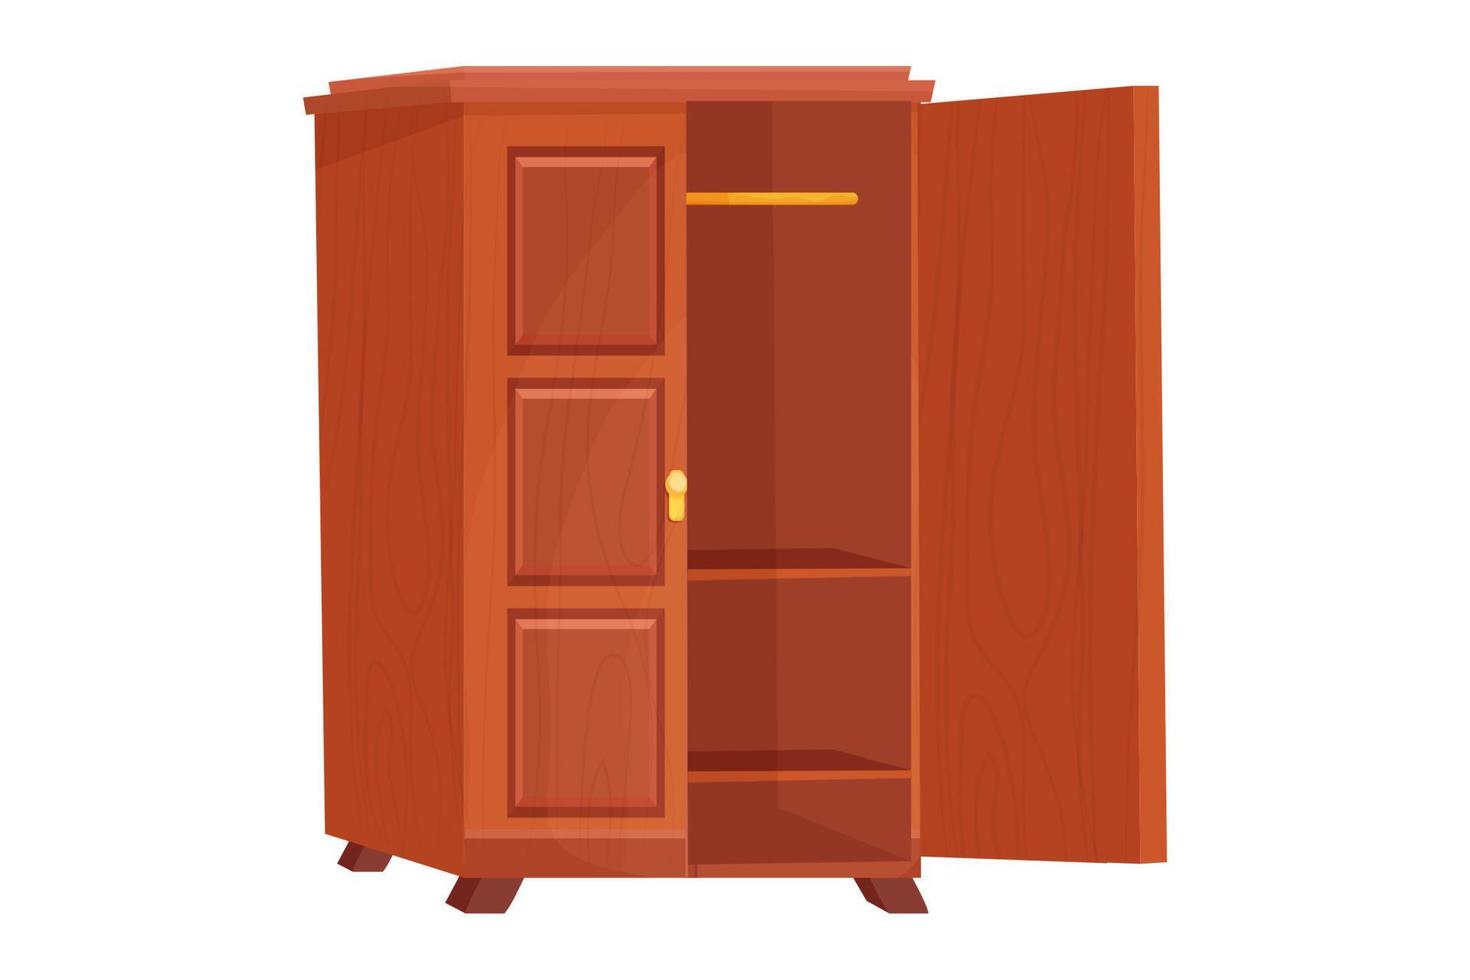 armario de madera muebles vacíos con estante en estilo de dibujos animados aislado sobre fondo blanco. armario, objeto interior del cajón. ilustración vectorial vector